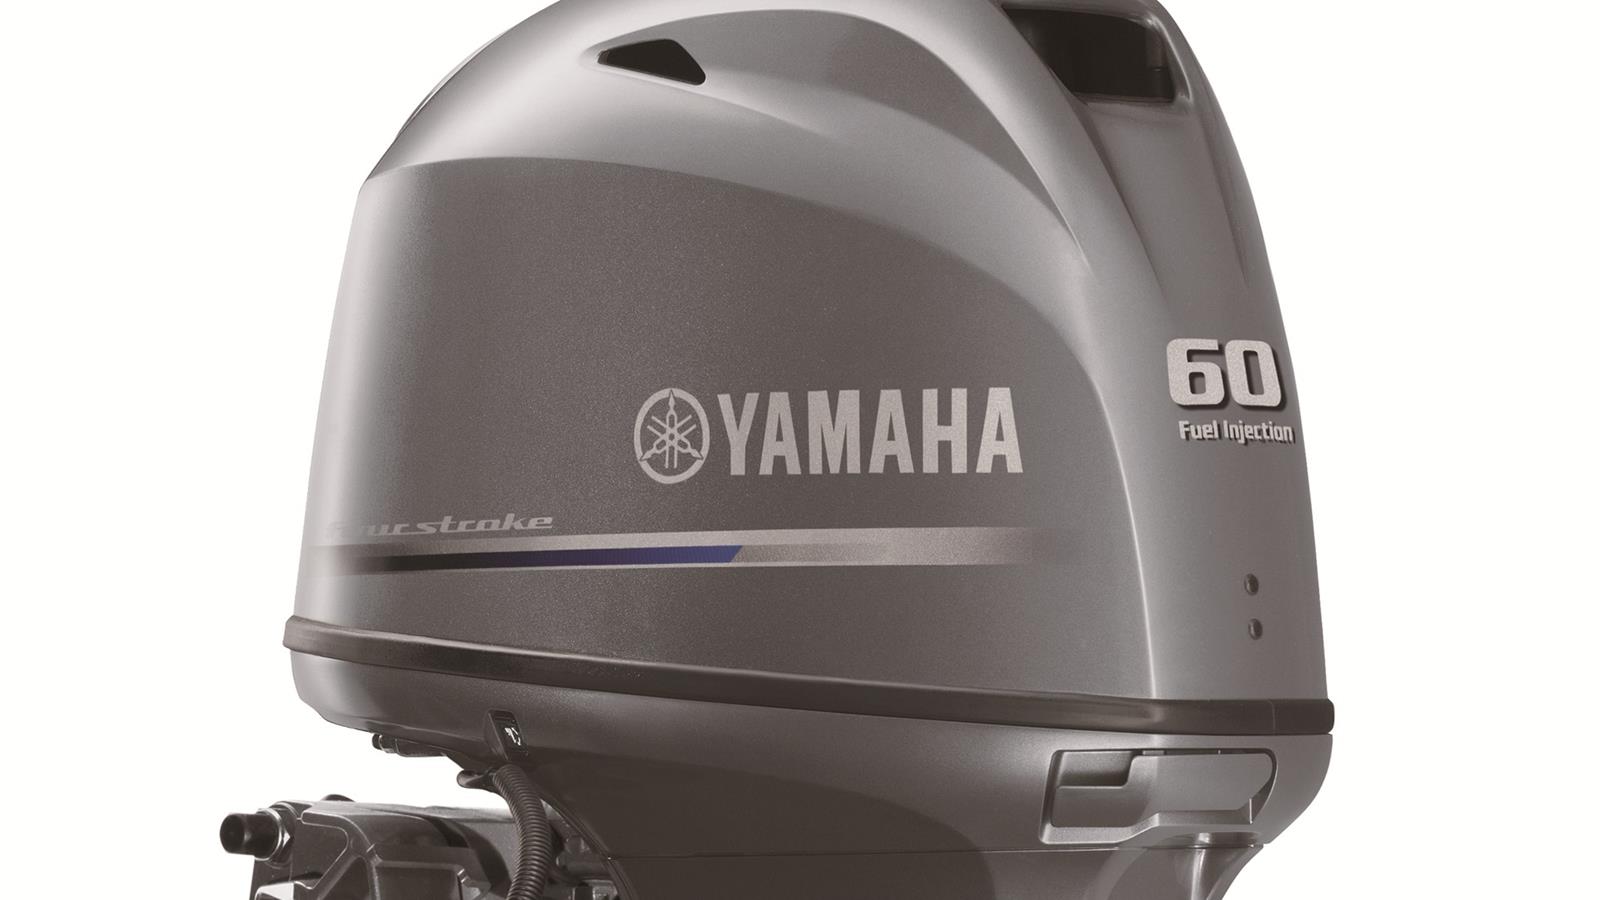 Yamaha anti-diefstalsysteem (Y-COP) Het unieke Y-COP systeem is eenvoudig, gebruiksvriendelijk en uiterst effectief: met een simpele druk op de knop van de handige afstandsbediening maakt u het